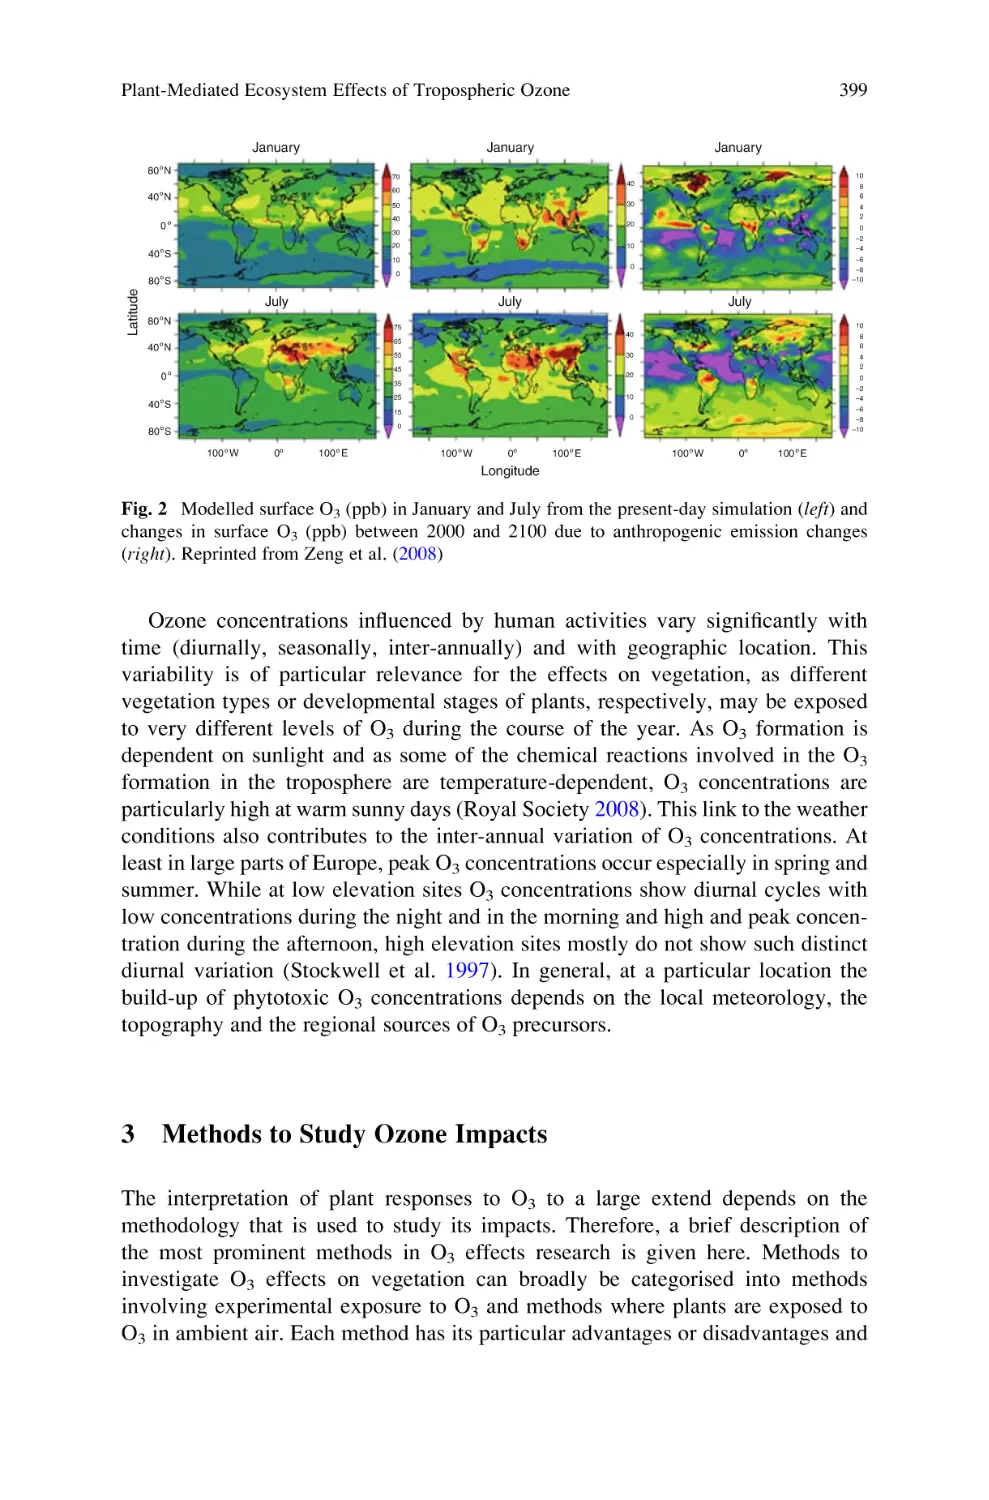 3 Methods to Study Ozone Impacts